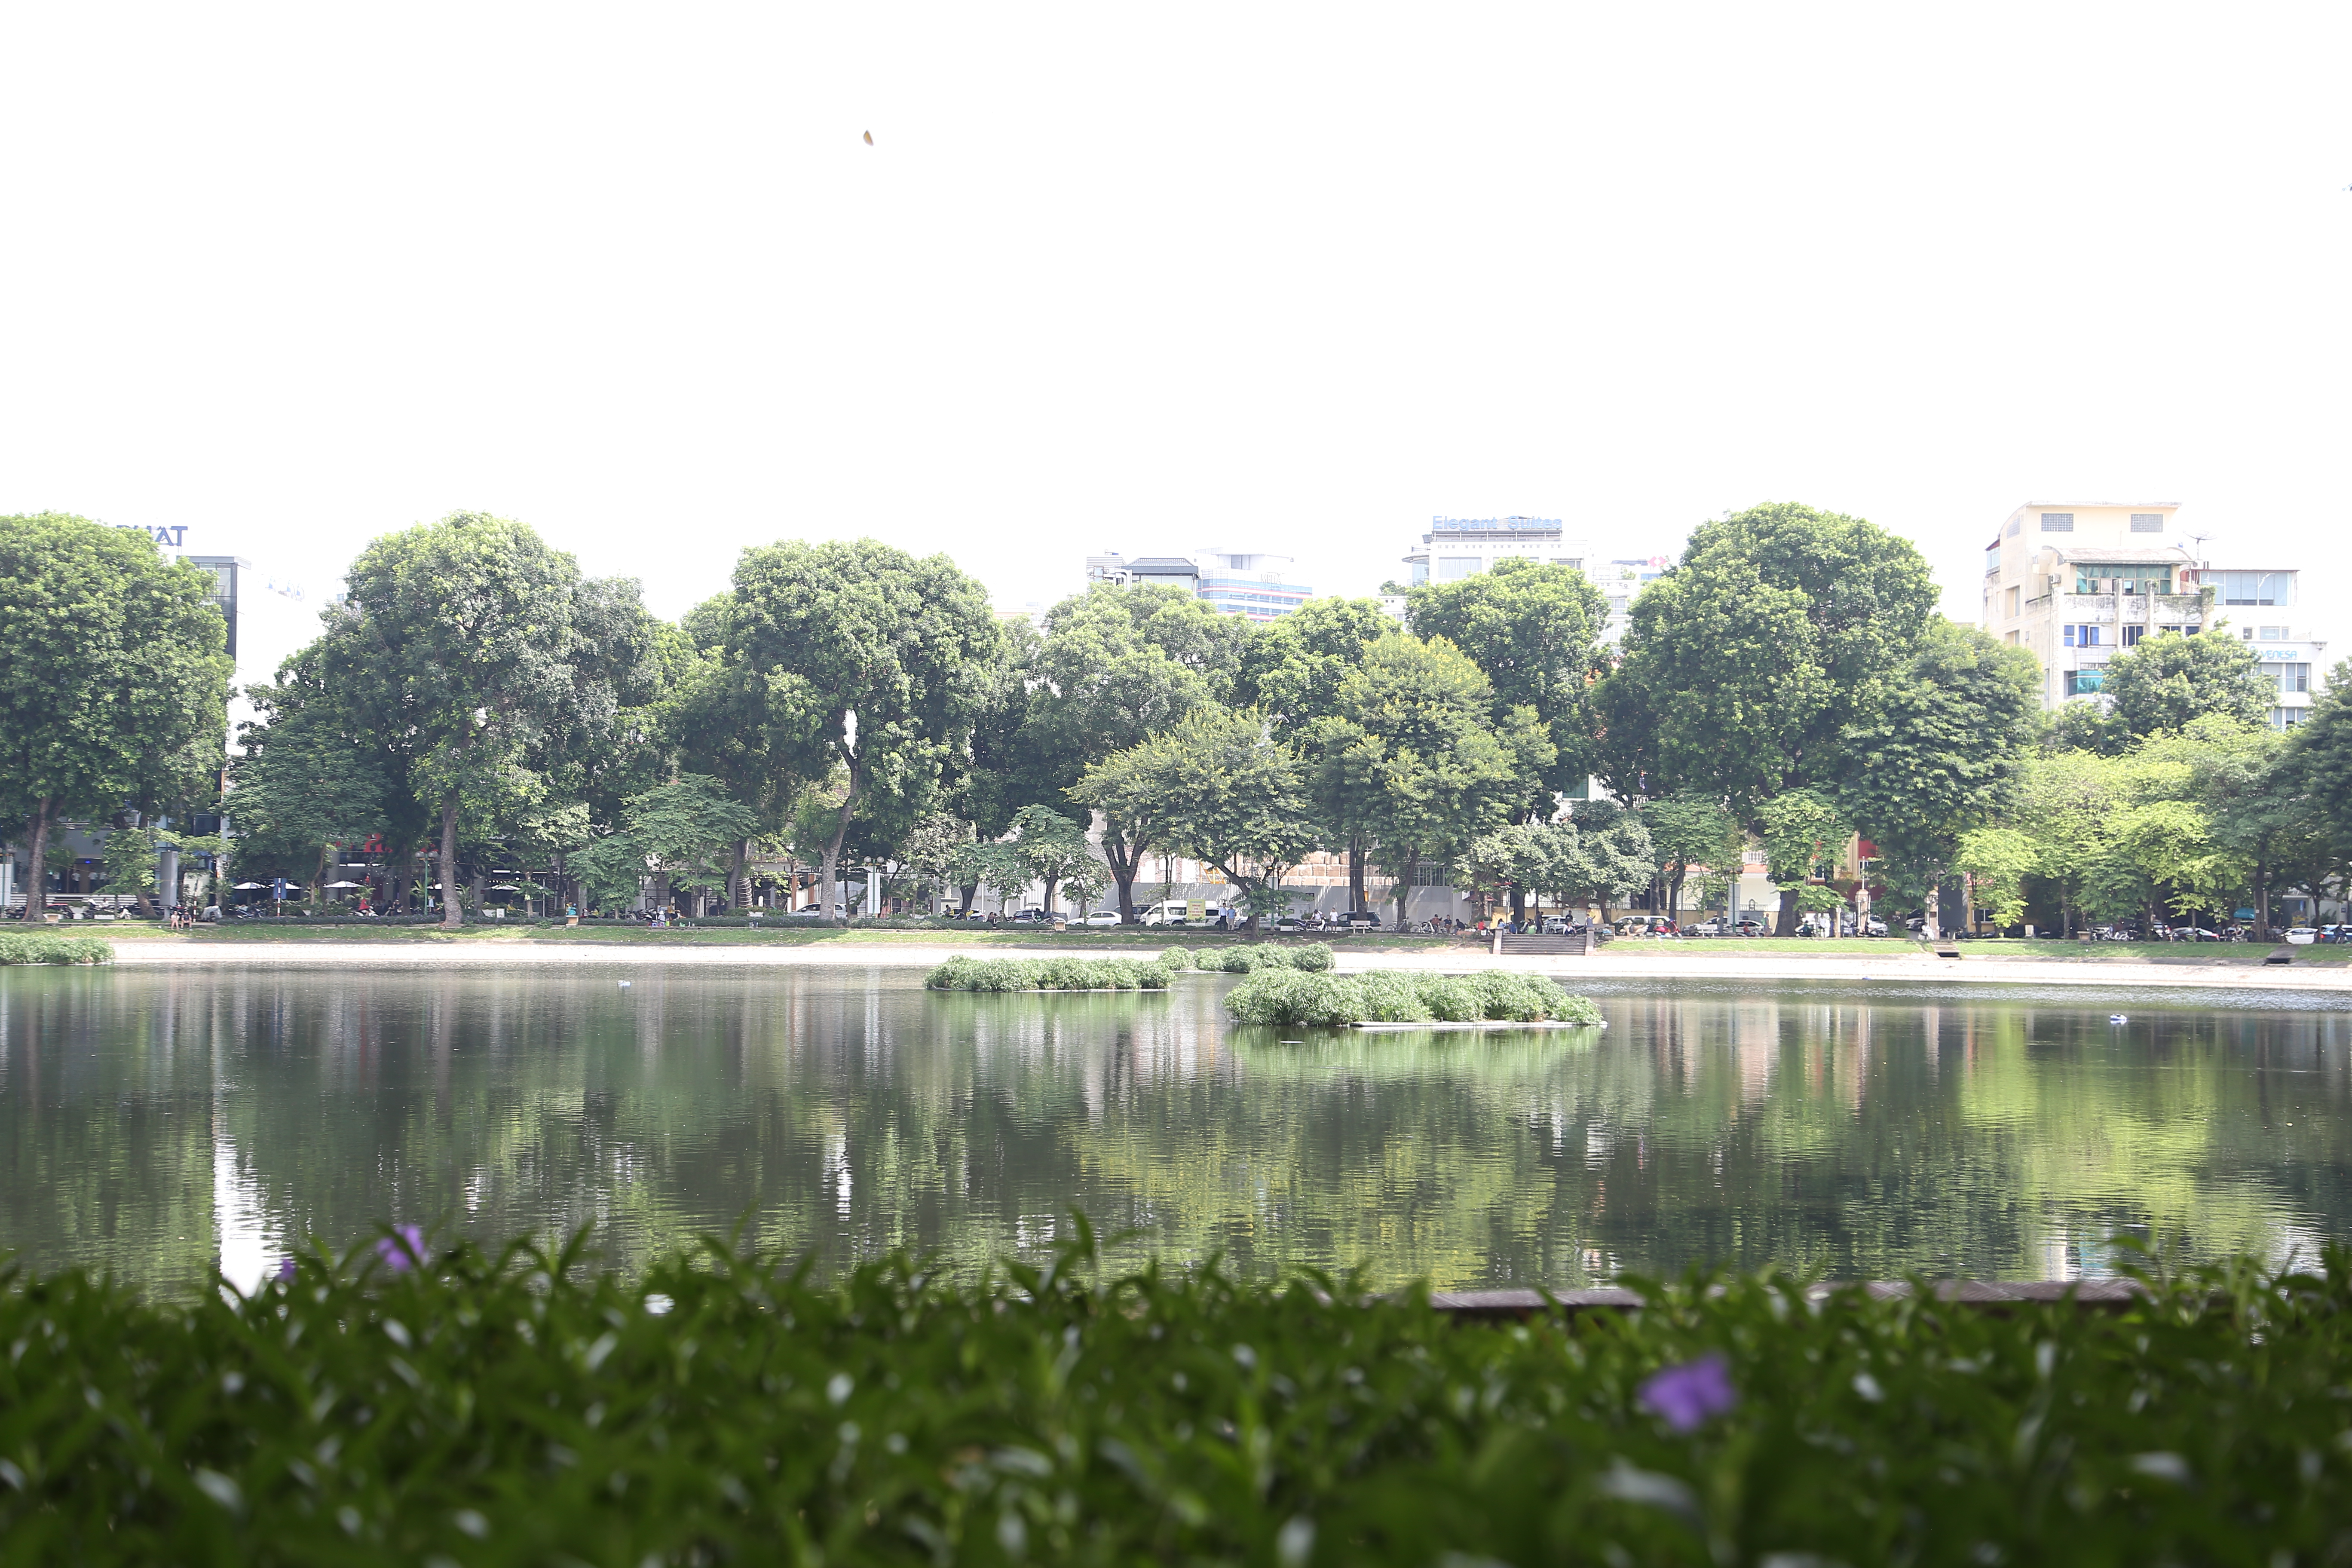 Đề xuất cải tạo cây xanh, đường dạo, các tiện ích đô thị và hệ thống hạ tầng kỹ thuật tại khu vực xung quanh hồ Thiền Quang, Hà Nội. Ảnh: Vĩnh Hoàng